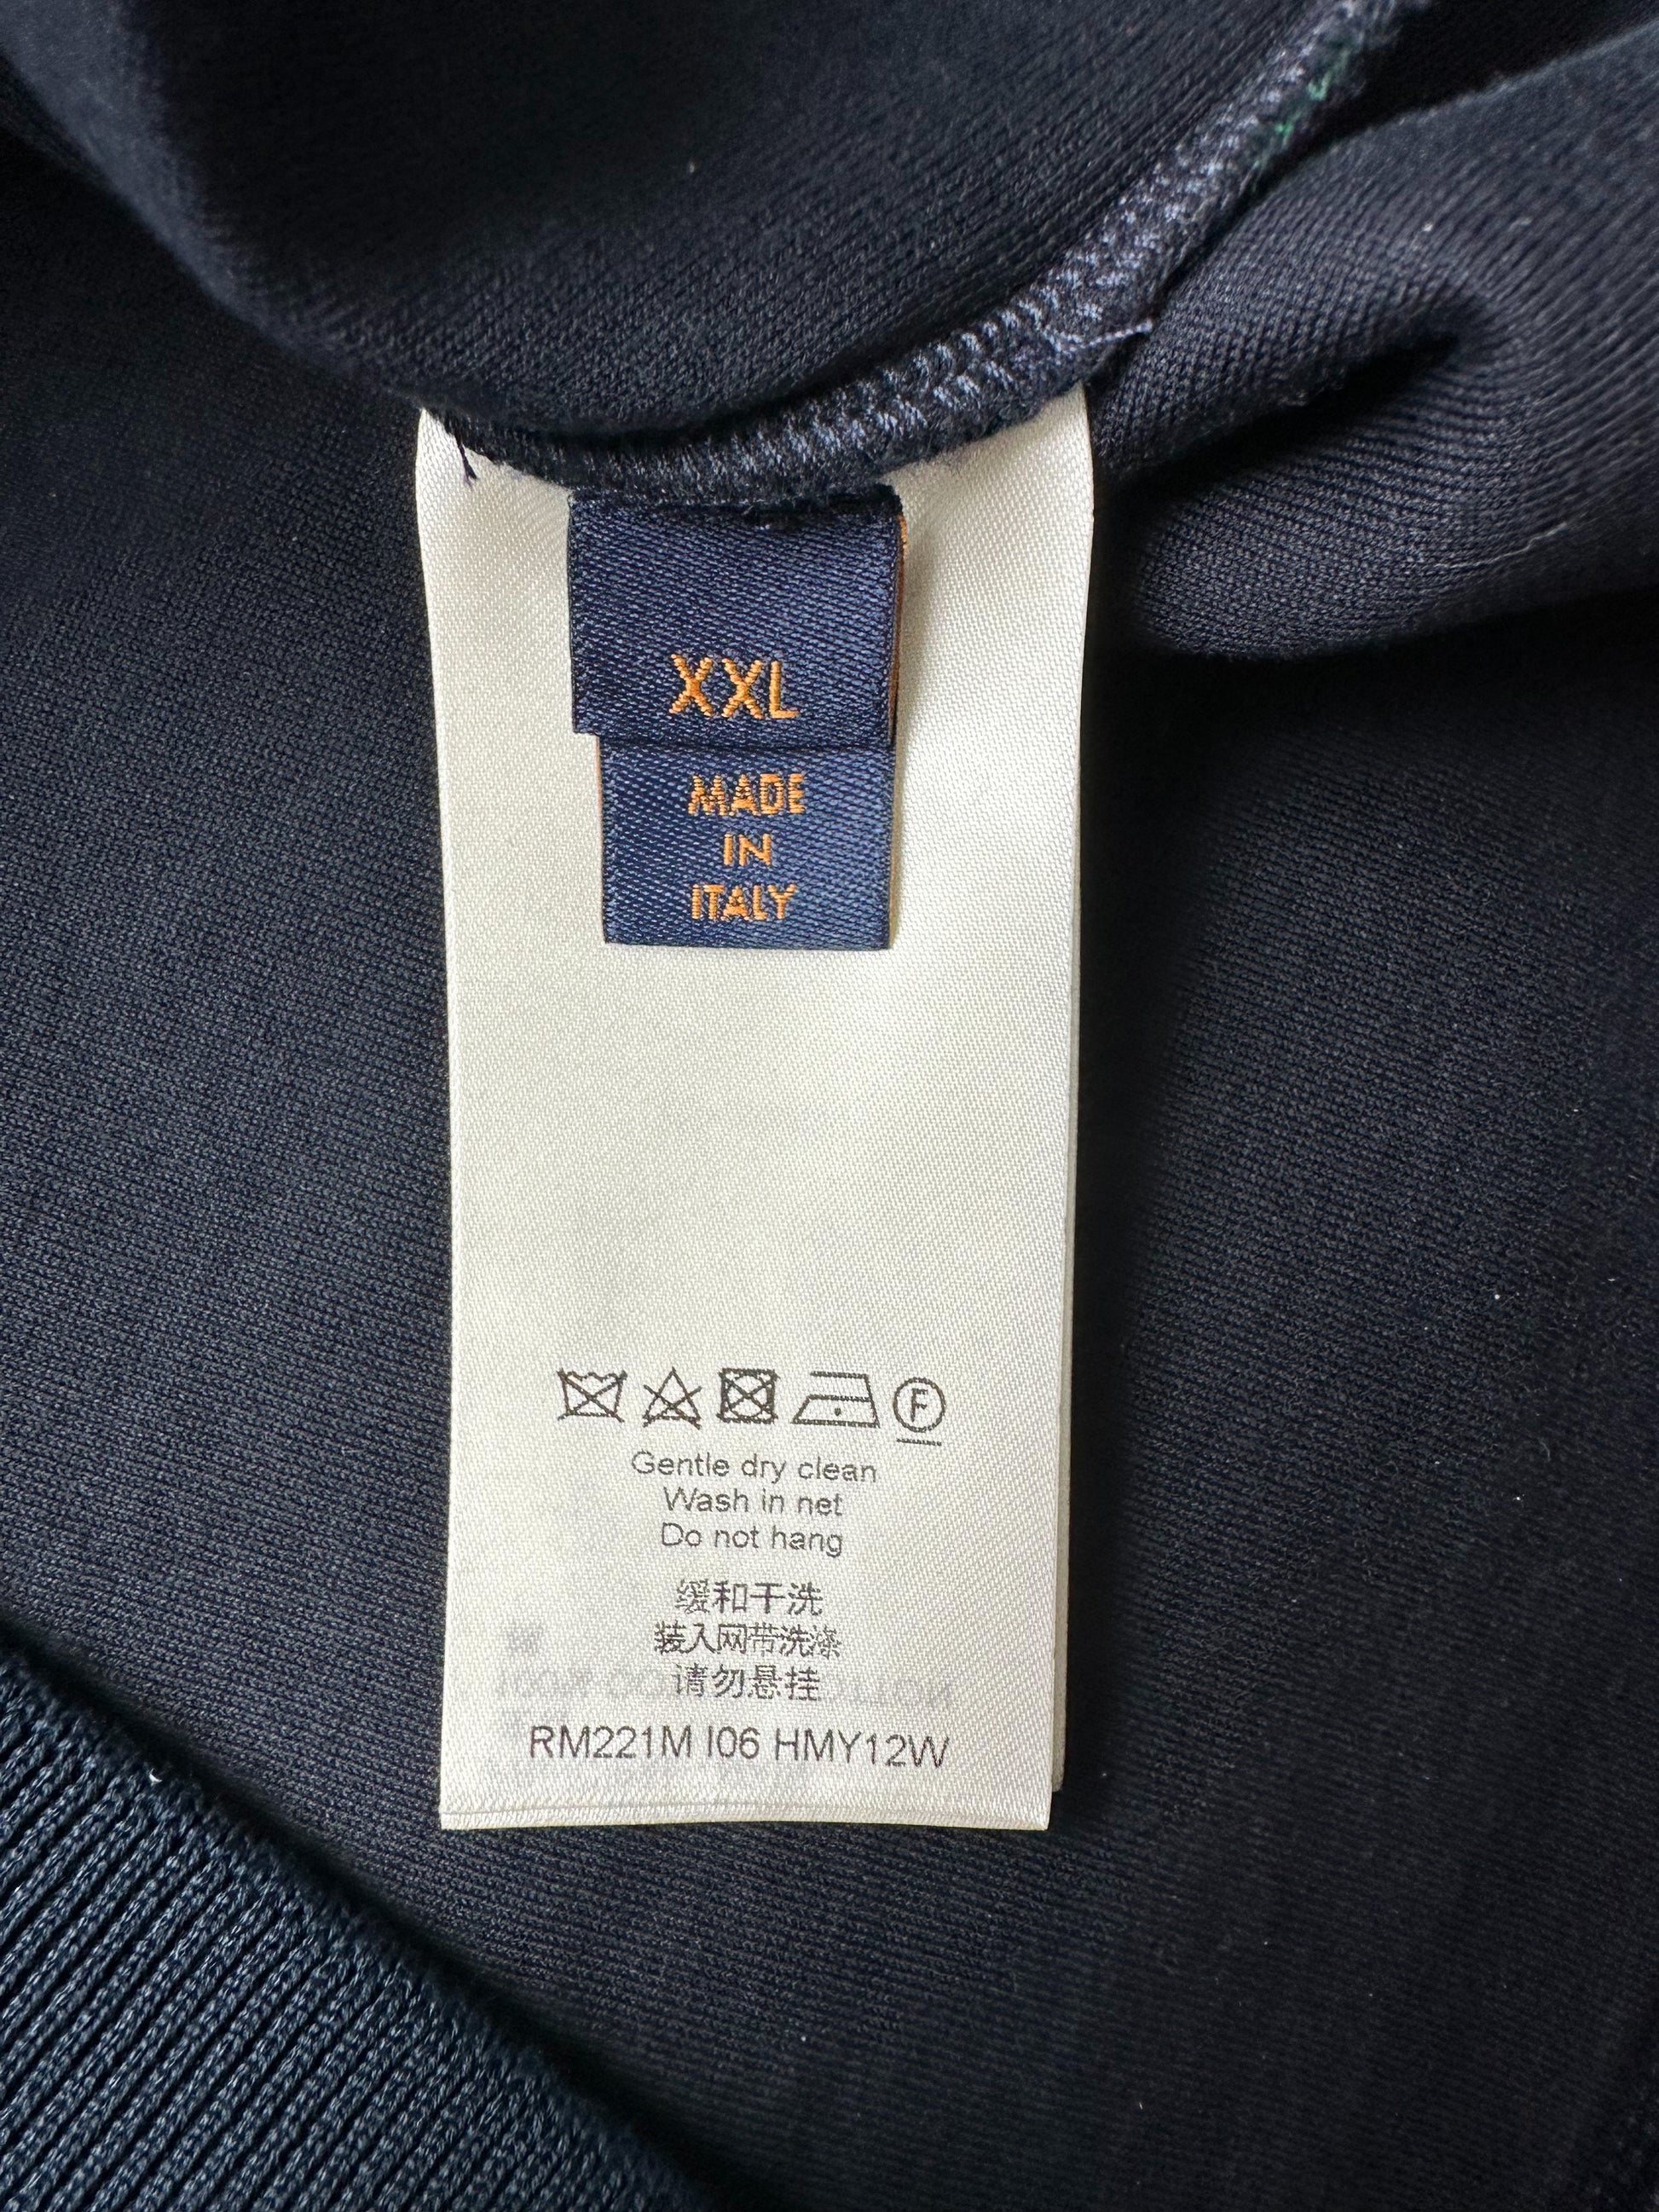 Louis Vuitton Blue & Red Monogram Gradient Sweater – Savonches